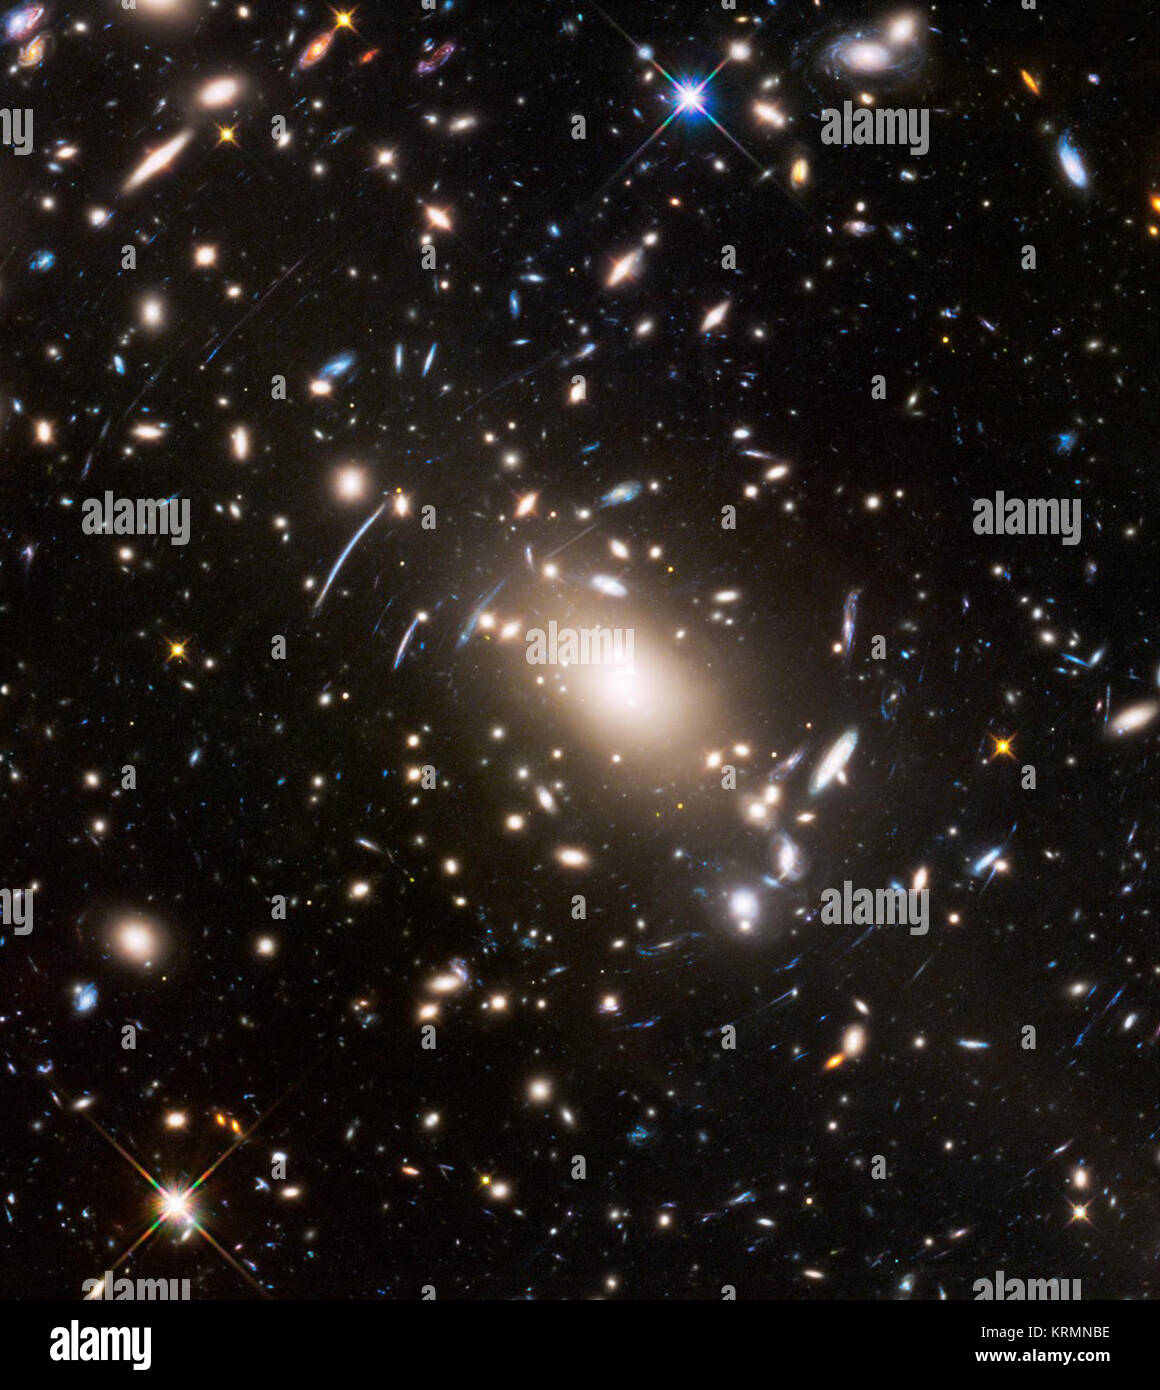 Abell S1063, ein Galaxienhaufen, wurde von der NASA/ESA Hubble Space Telescope als Teil der Grenze programm Felder beobachtet. Die große Masse der Cluster fungiert als kosmische Lupe und vergrößert noch mehr ferne Galaxien, so dass sie hell genug werden für Hubble zu sehen. Abell S1063 Stockfoto